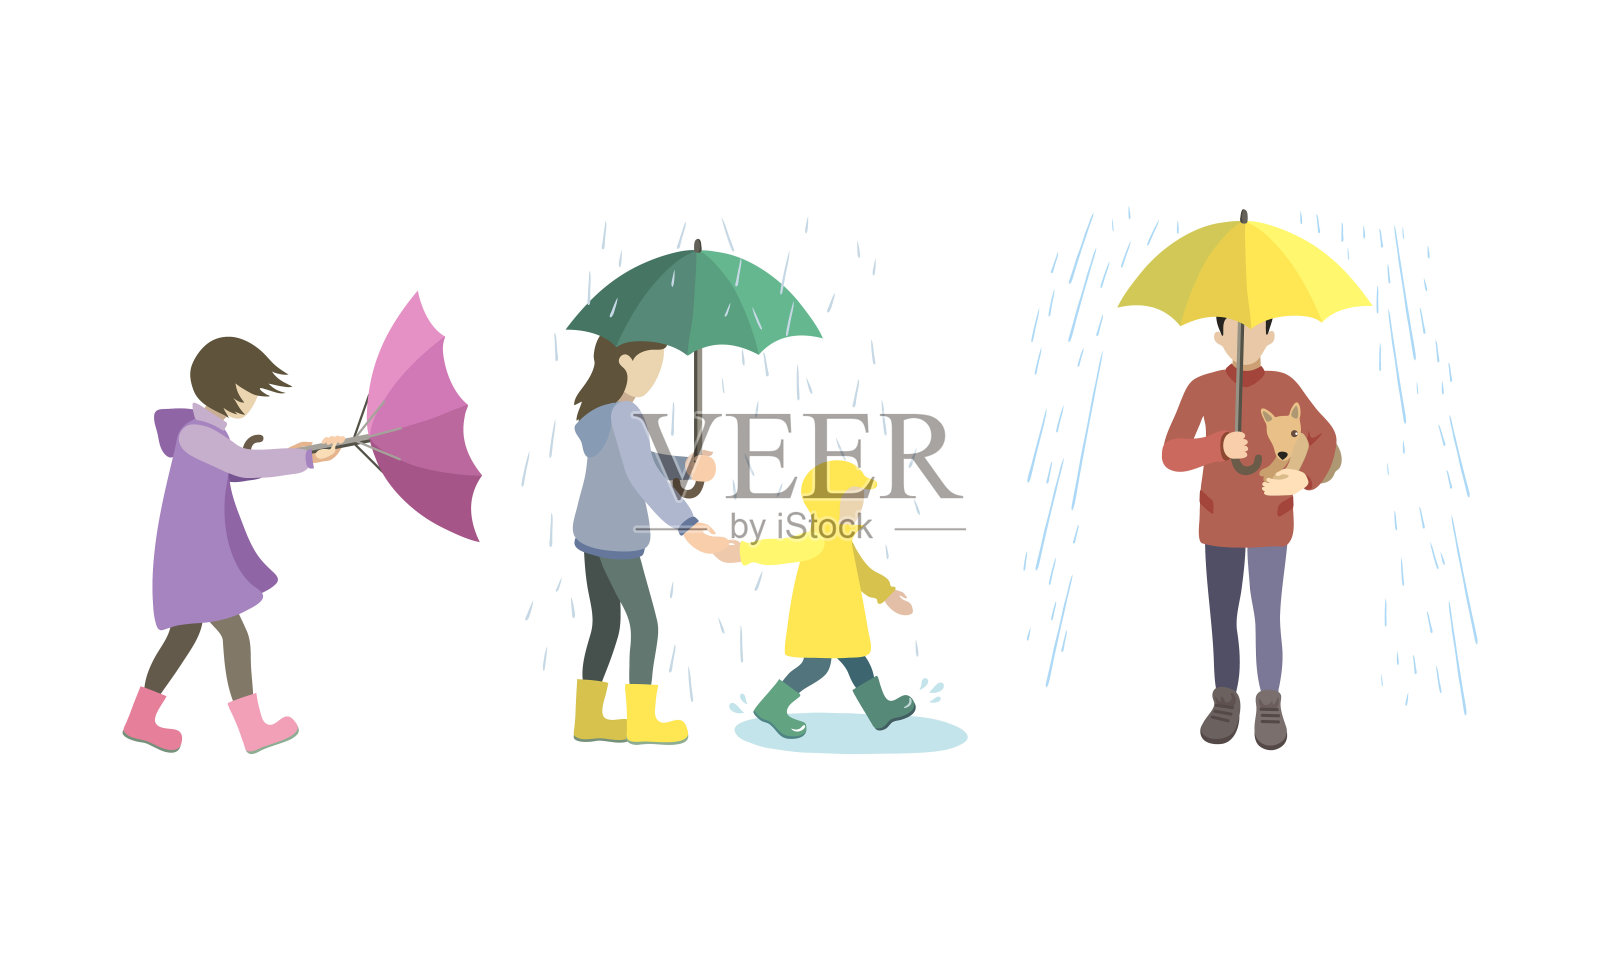 狂风暴雨天气下打伞的卡通素材下载